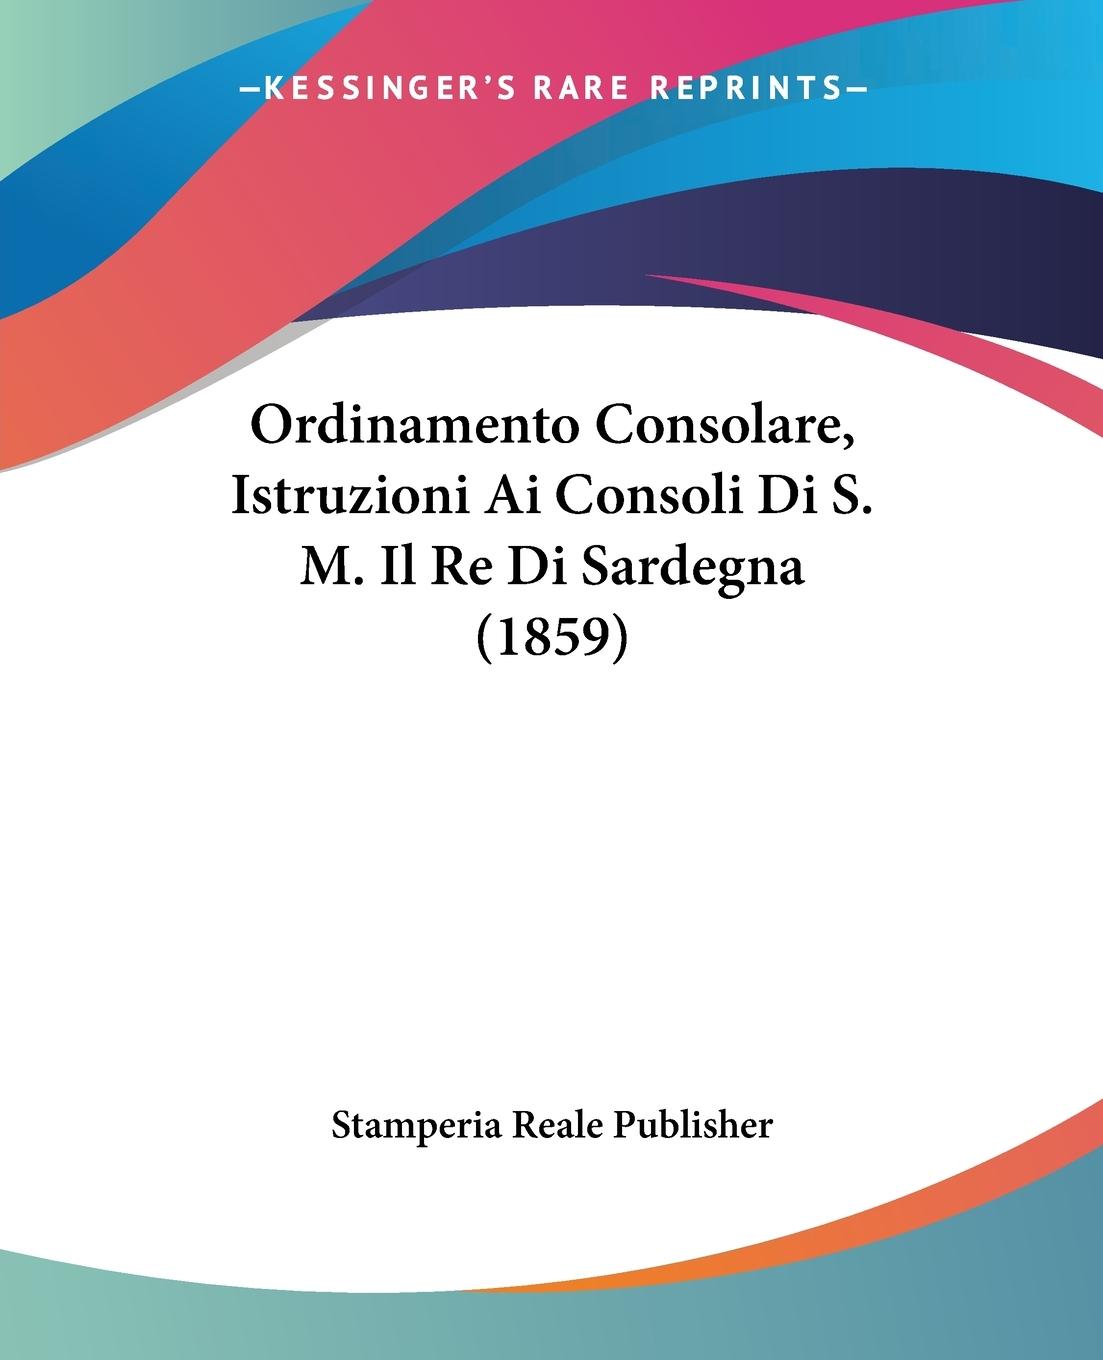 Ordinamento Consolare, Istruzioni Ai Consoli Di S. M. Il Re Di Sardegna (1859) - Stamperia Reale Publisher